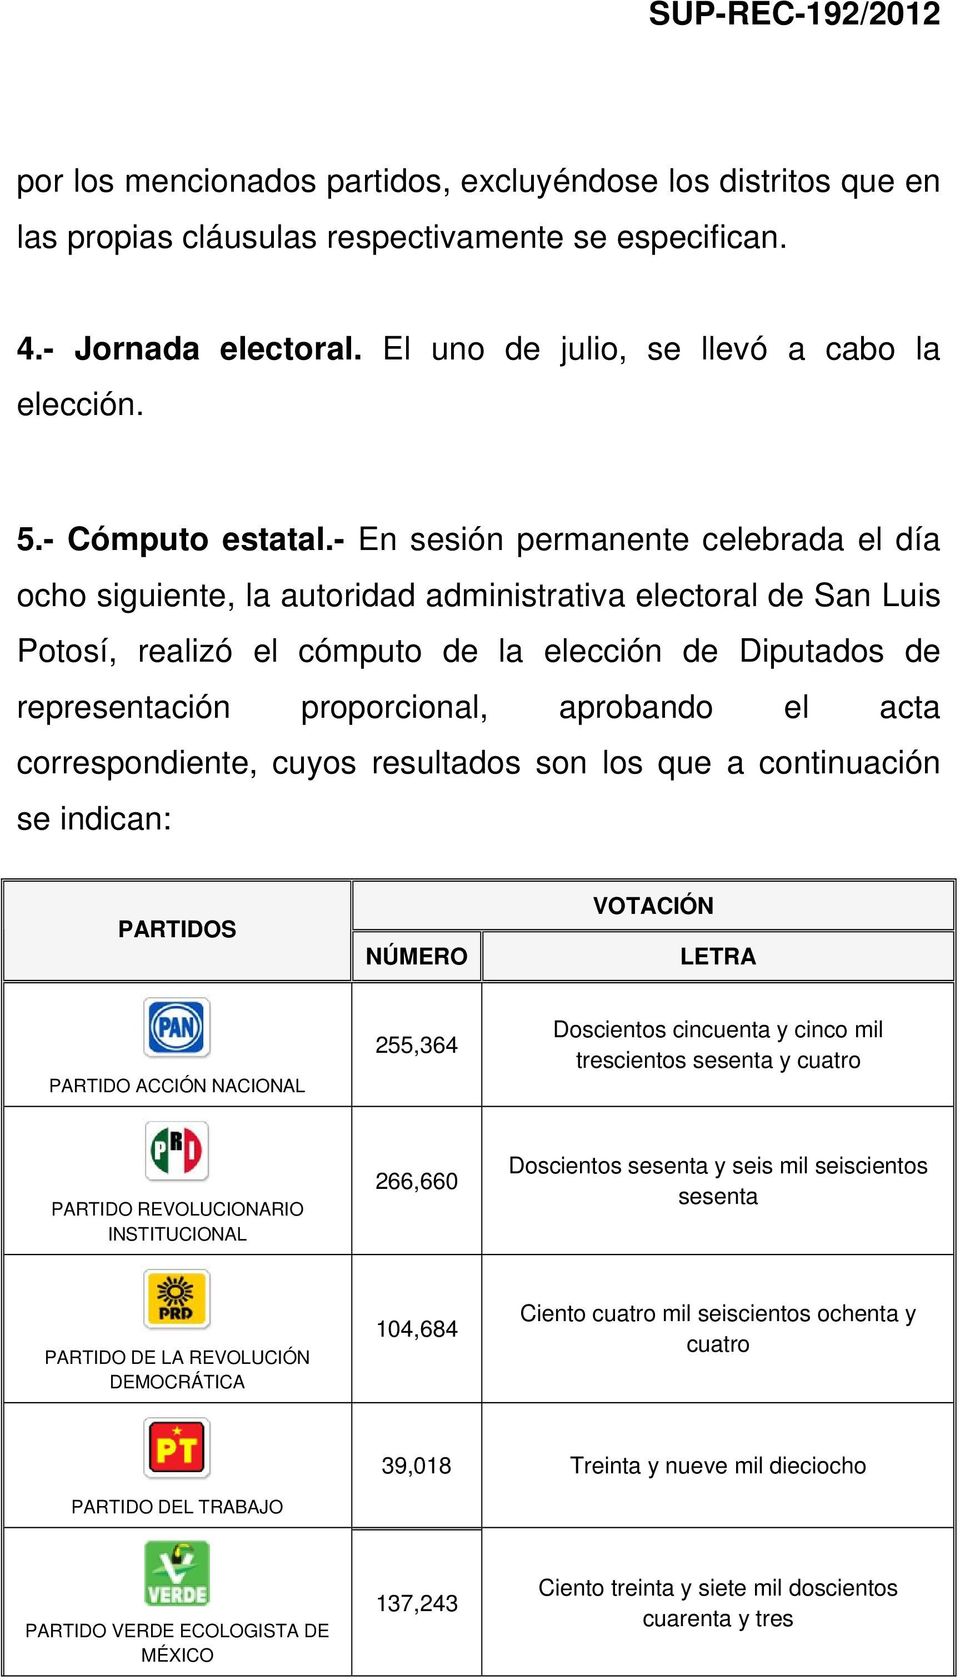 - En sesión permanente celebrada el día ocho siguiente, la autoridad administrativa electoral de San Luis Potosí, realizó el cómputo de la elección de Diputados de representación proporcional,